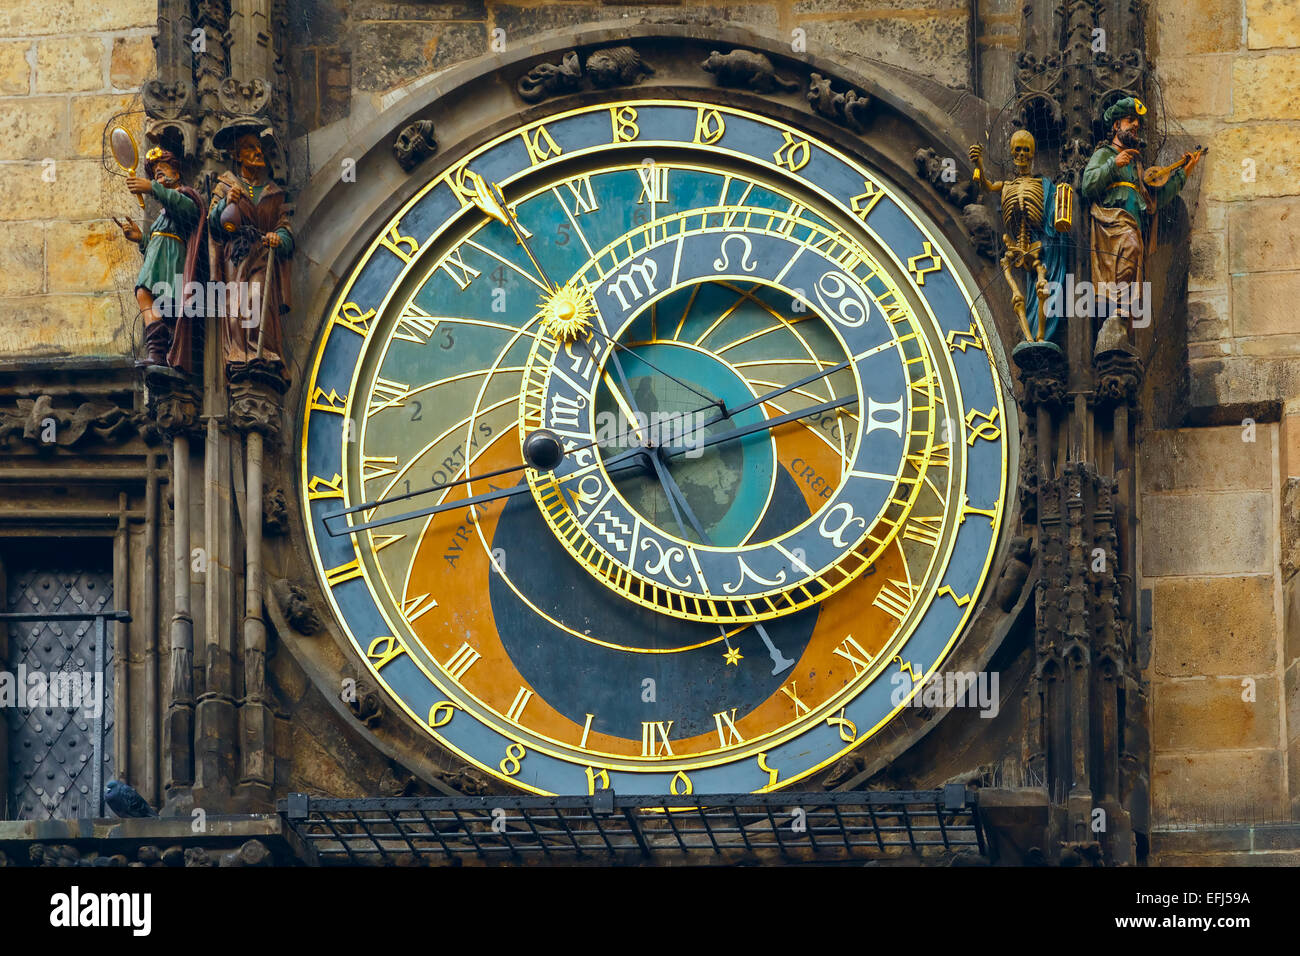 Prager astronomische Uhr (Orloj) in der Old Town Square, Tschechische Republik Stockfoto